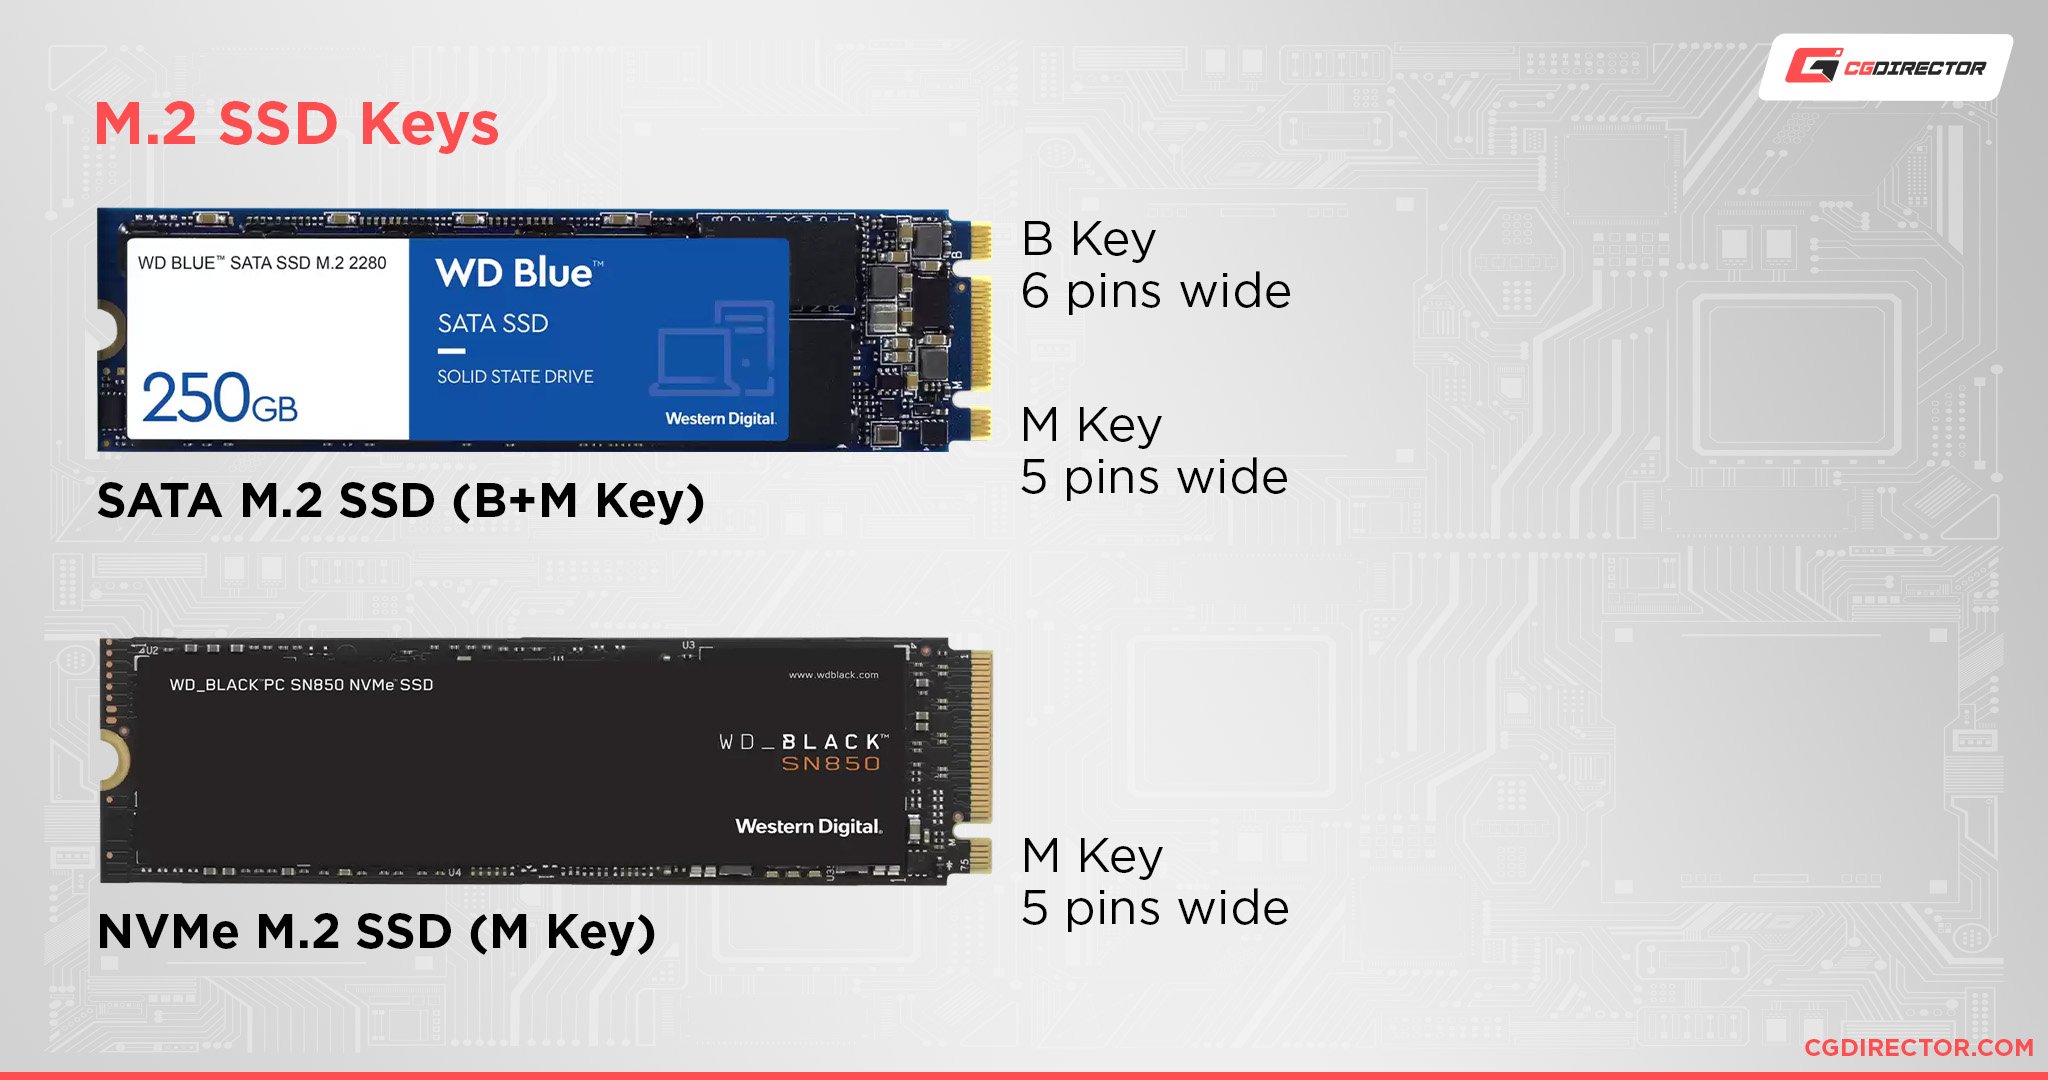 M.2 SSD Keys